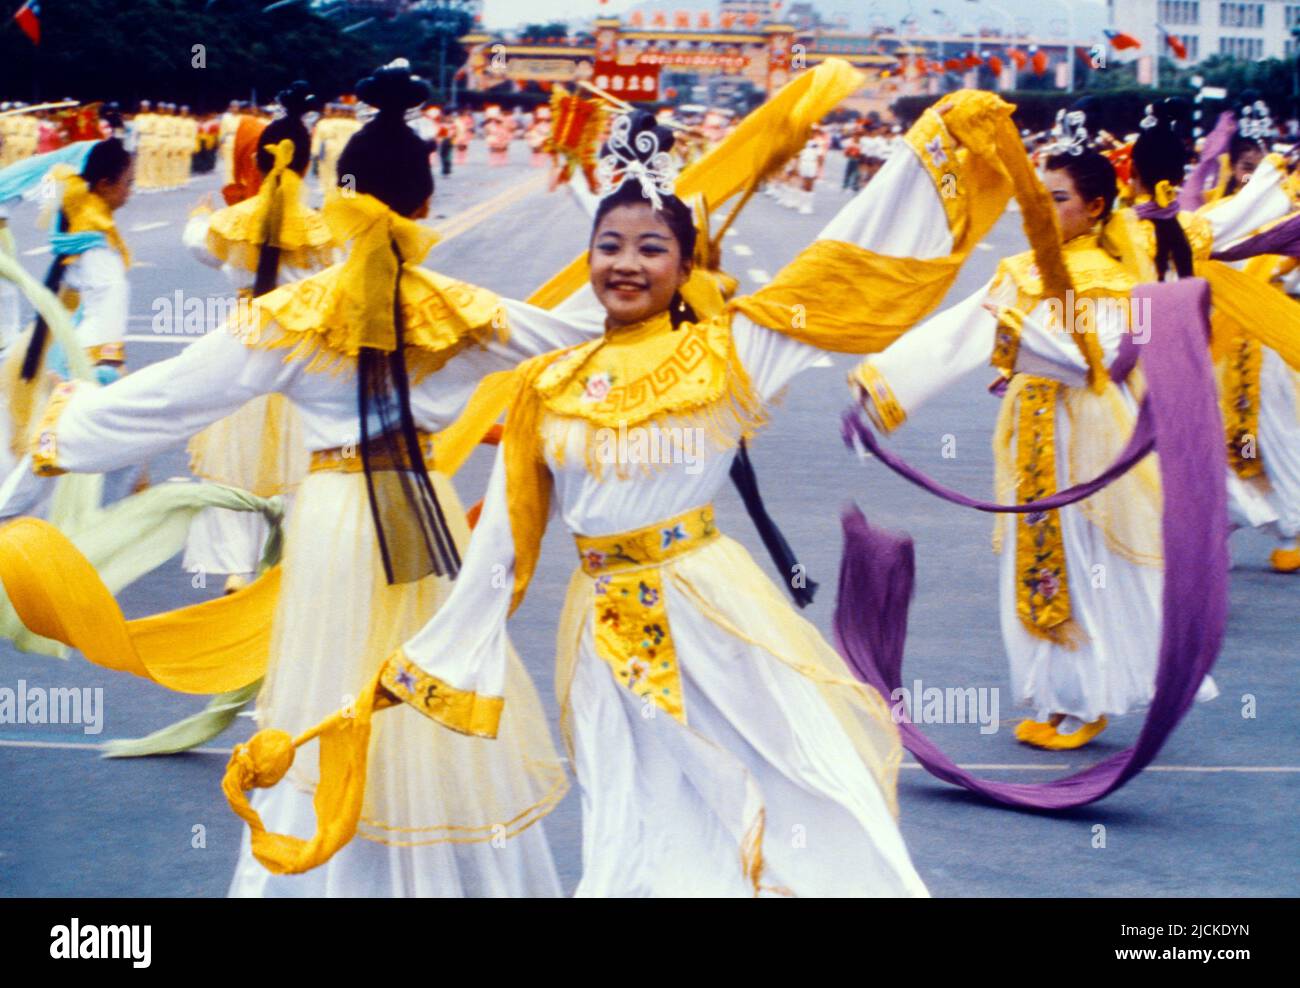 Taiwan Doppelter zehnter Tag - Feierlichkeiten zum Nationalfeiertag der Frauen, die in der Parade tanzen, erinnern an den Beginn des Wuchang-Aufstands am 10.. Oktober 1911 Stockfoto